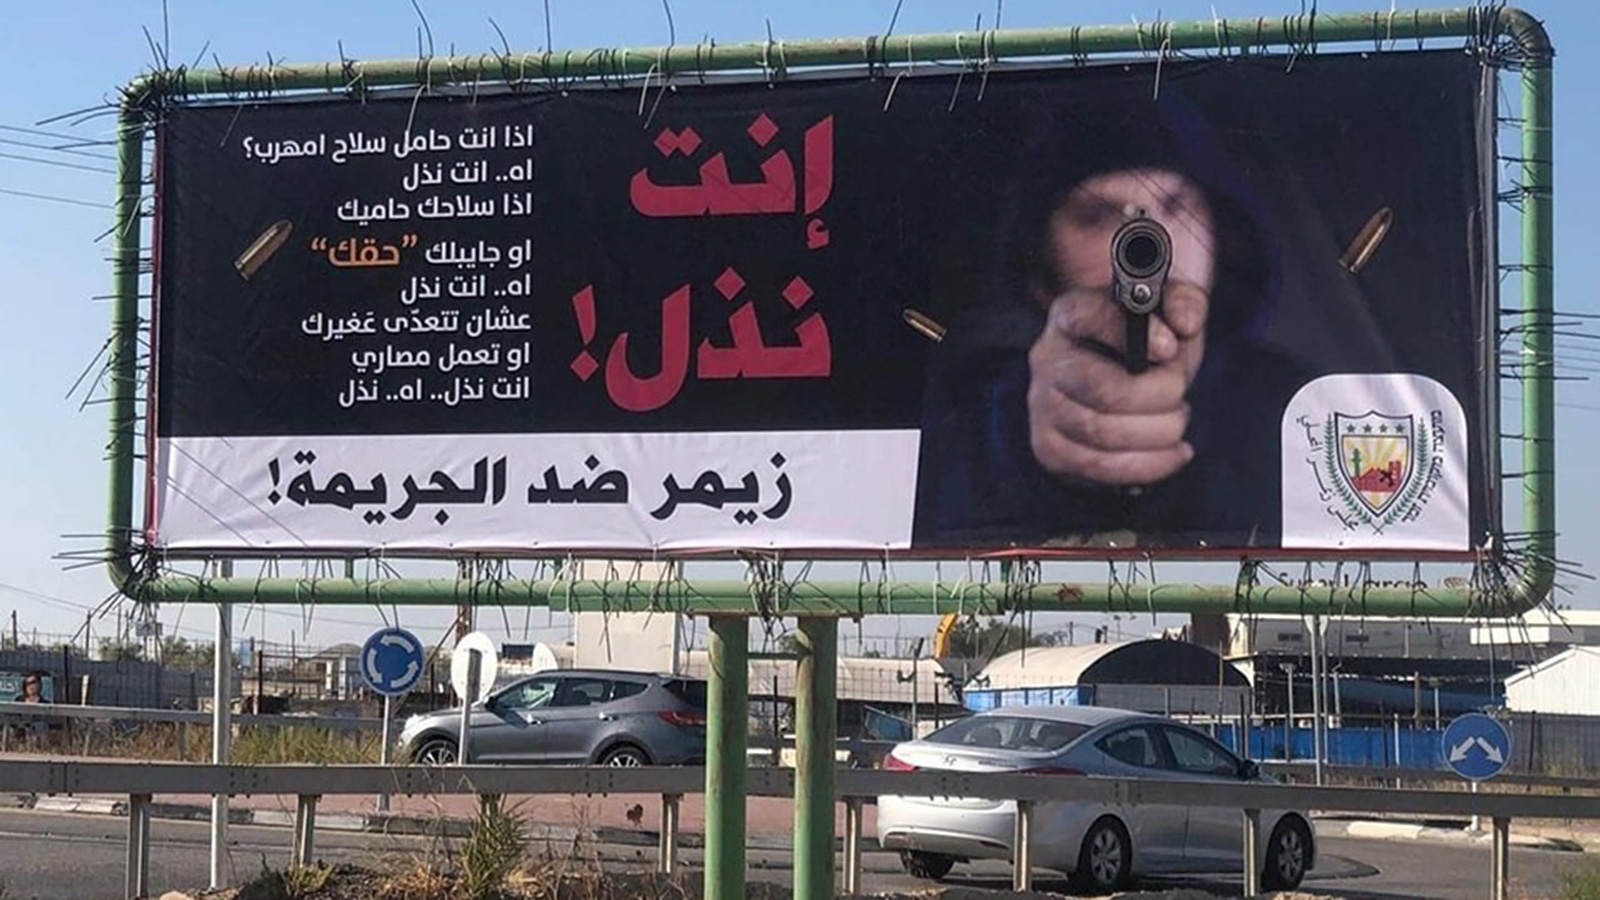 ‪‬ لافتات على مداخل البلدات العربية تهاجم من يروج للسلاح والقتل(الجزيرة)